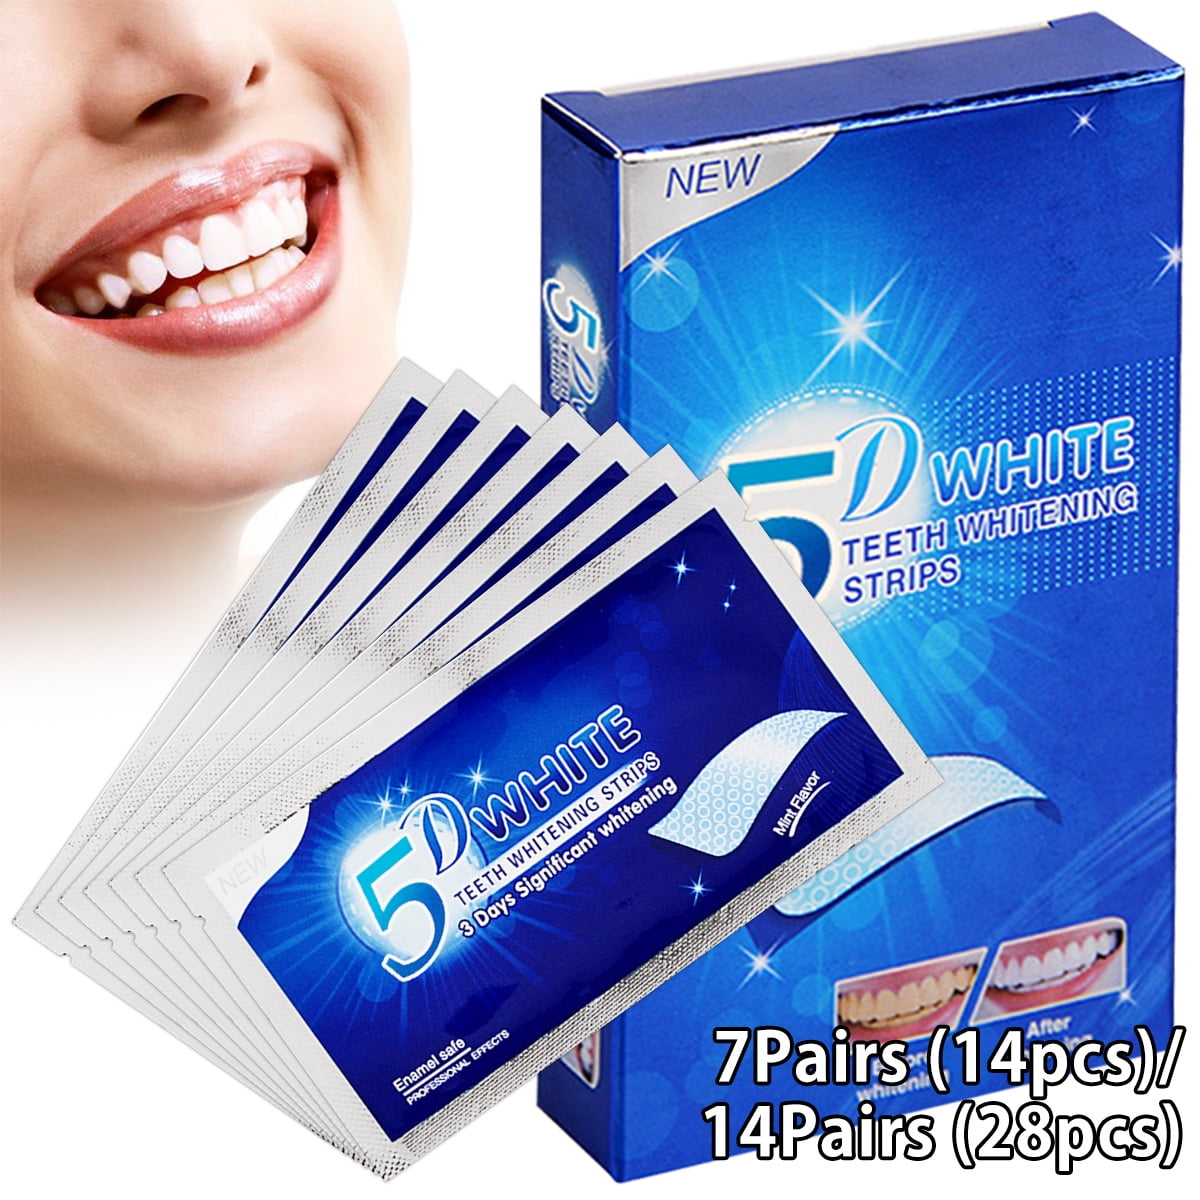 welpettie-teeth-whitening-gel-strips-advanced-teeth-whitening-strips